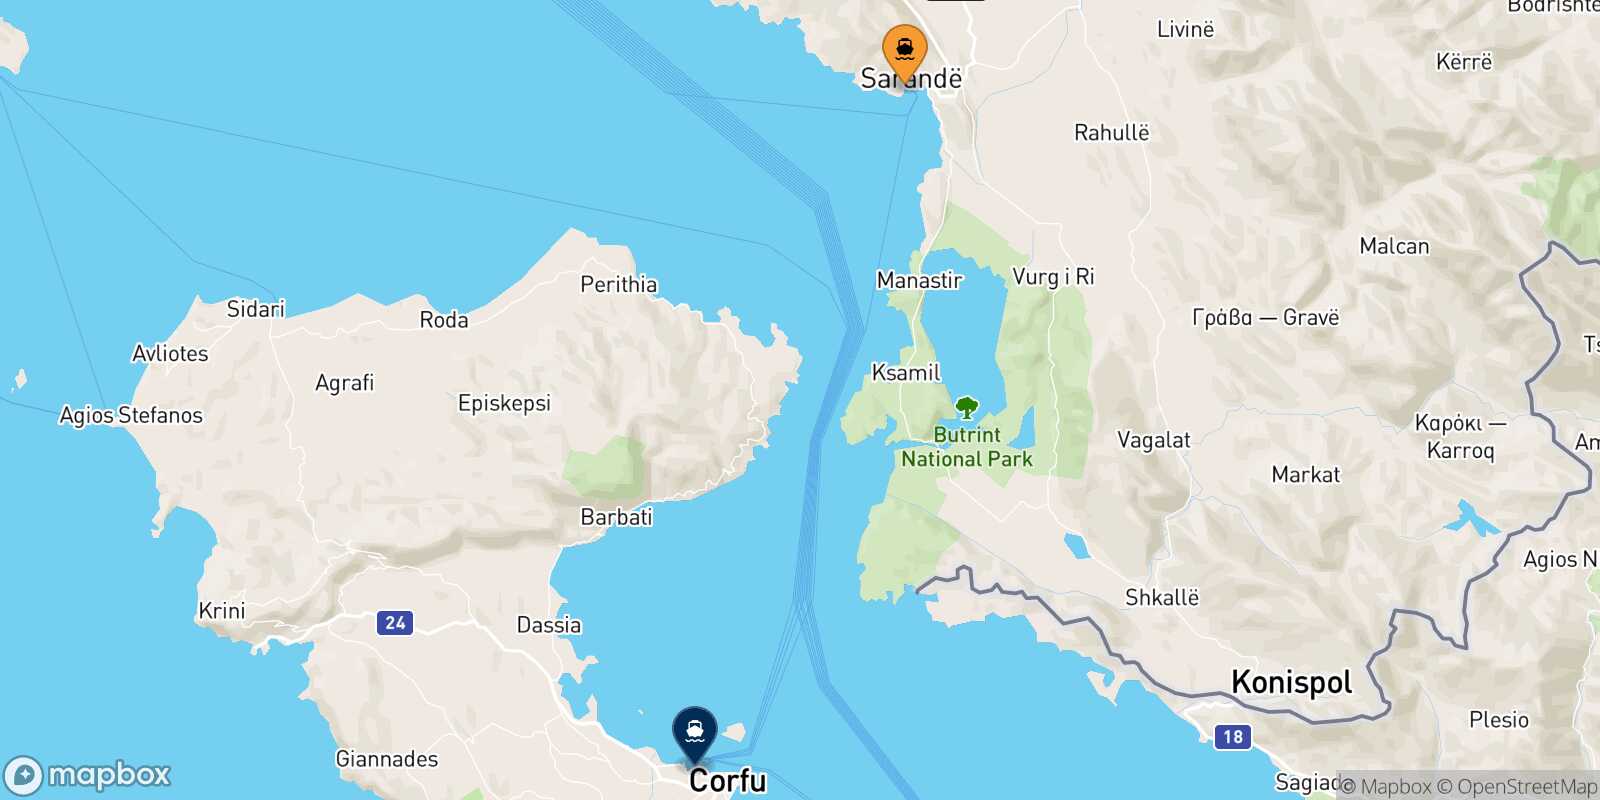 Mapa de la ruta Saranda Corfu